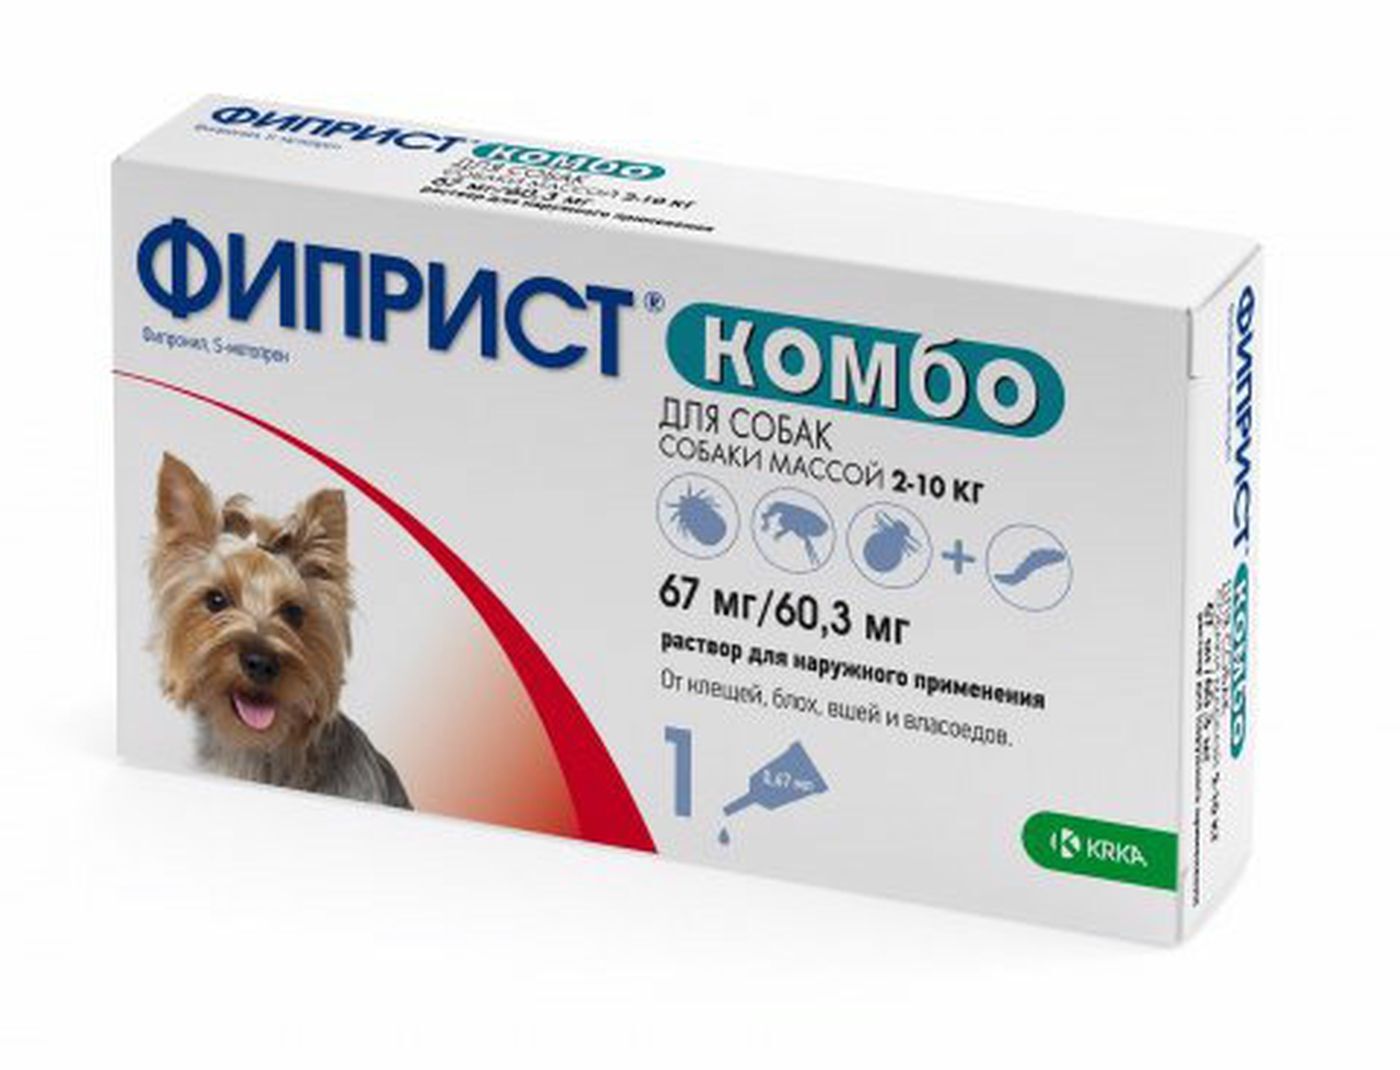 капли для собак 2-10 кг "фиприст комбо" инсектоакарицидные, 1 пипетка по 0,67 мл